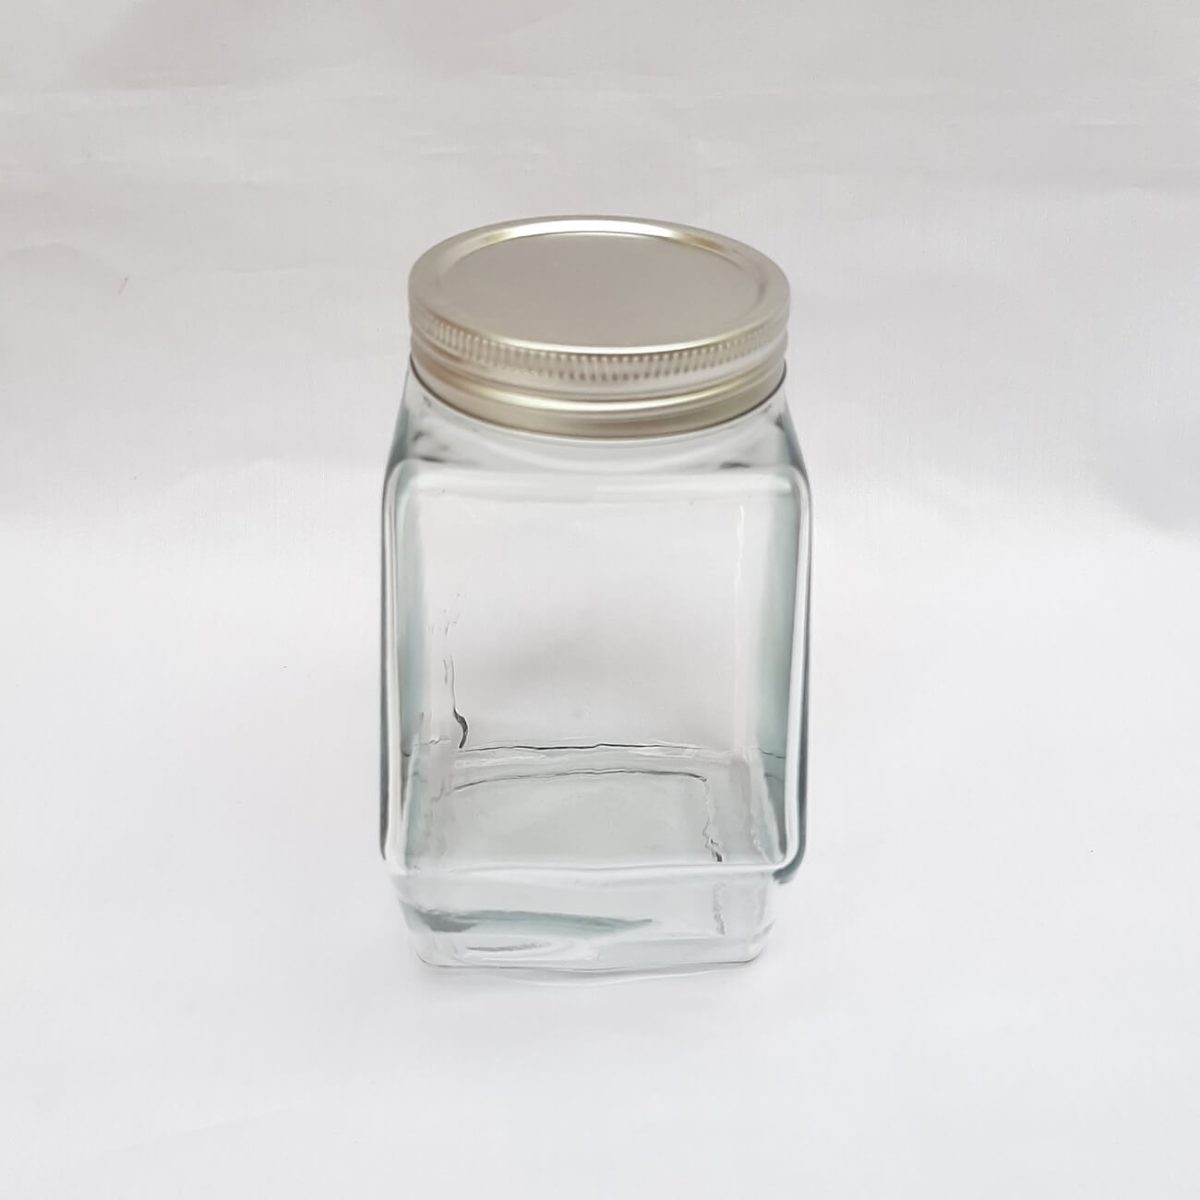 جار شیشه عسل یک کیلو کندو درب کانتینری